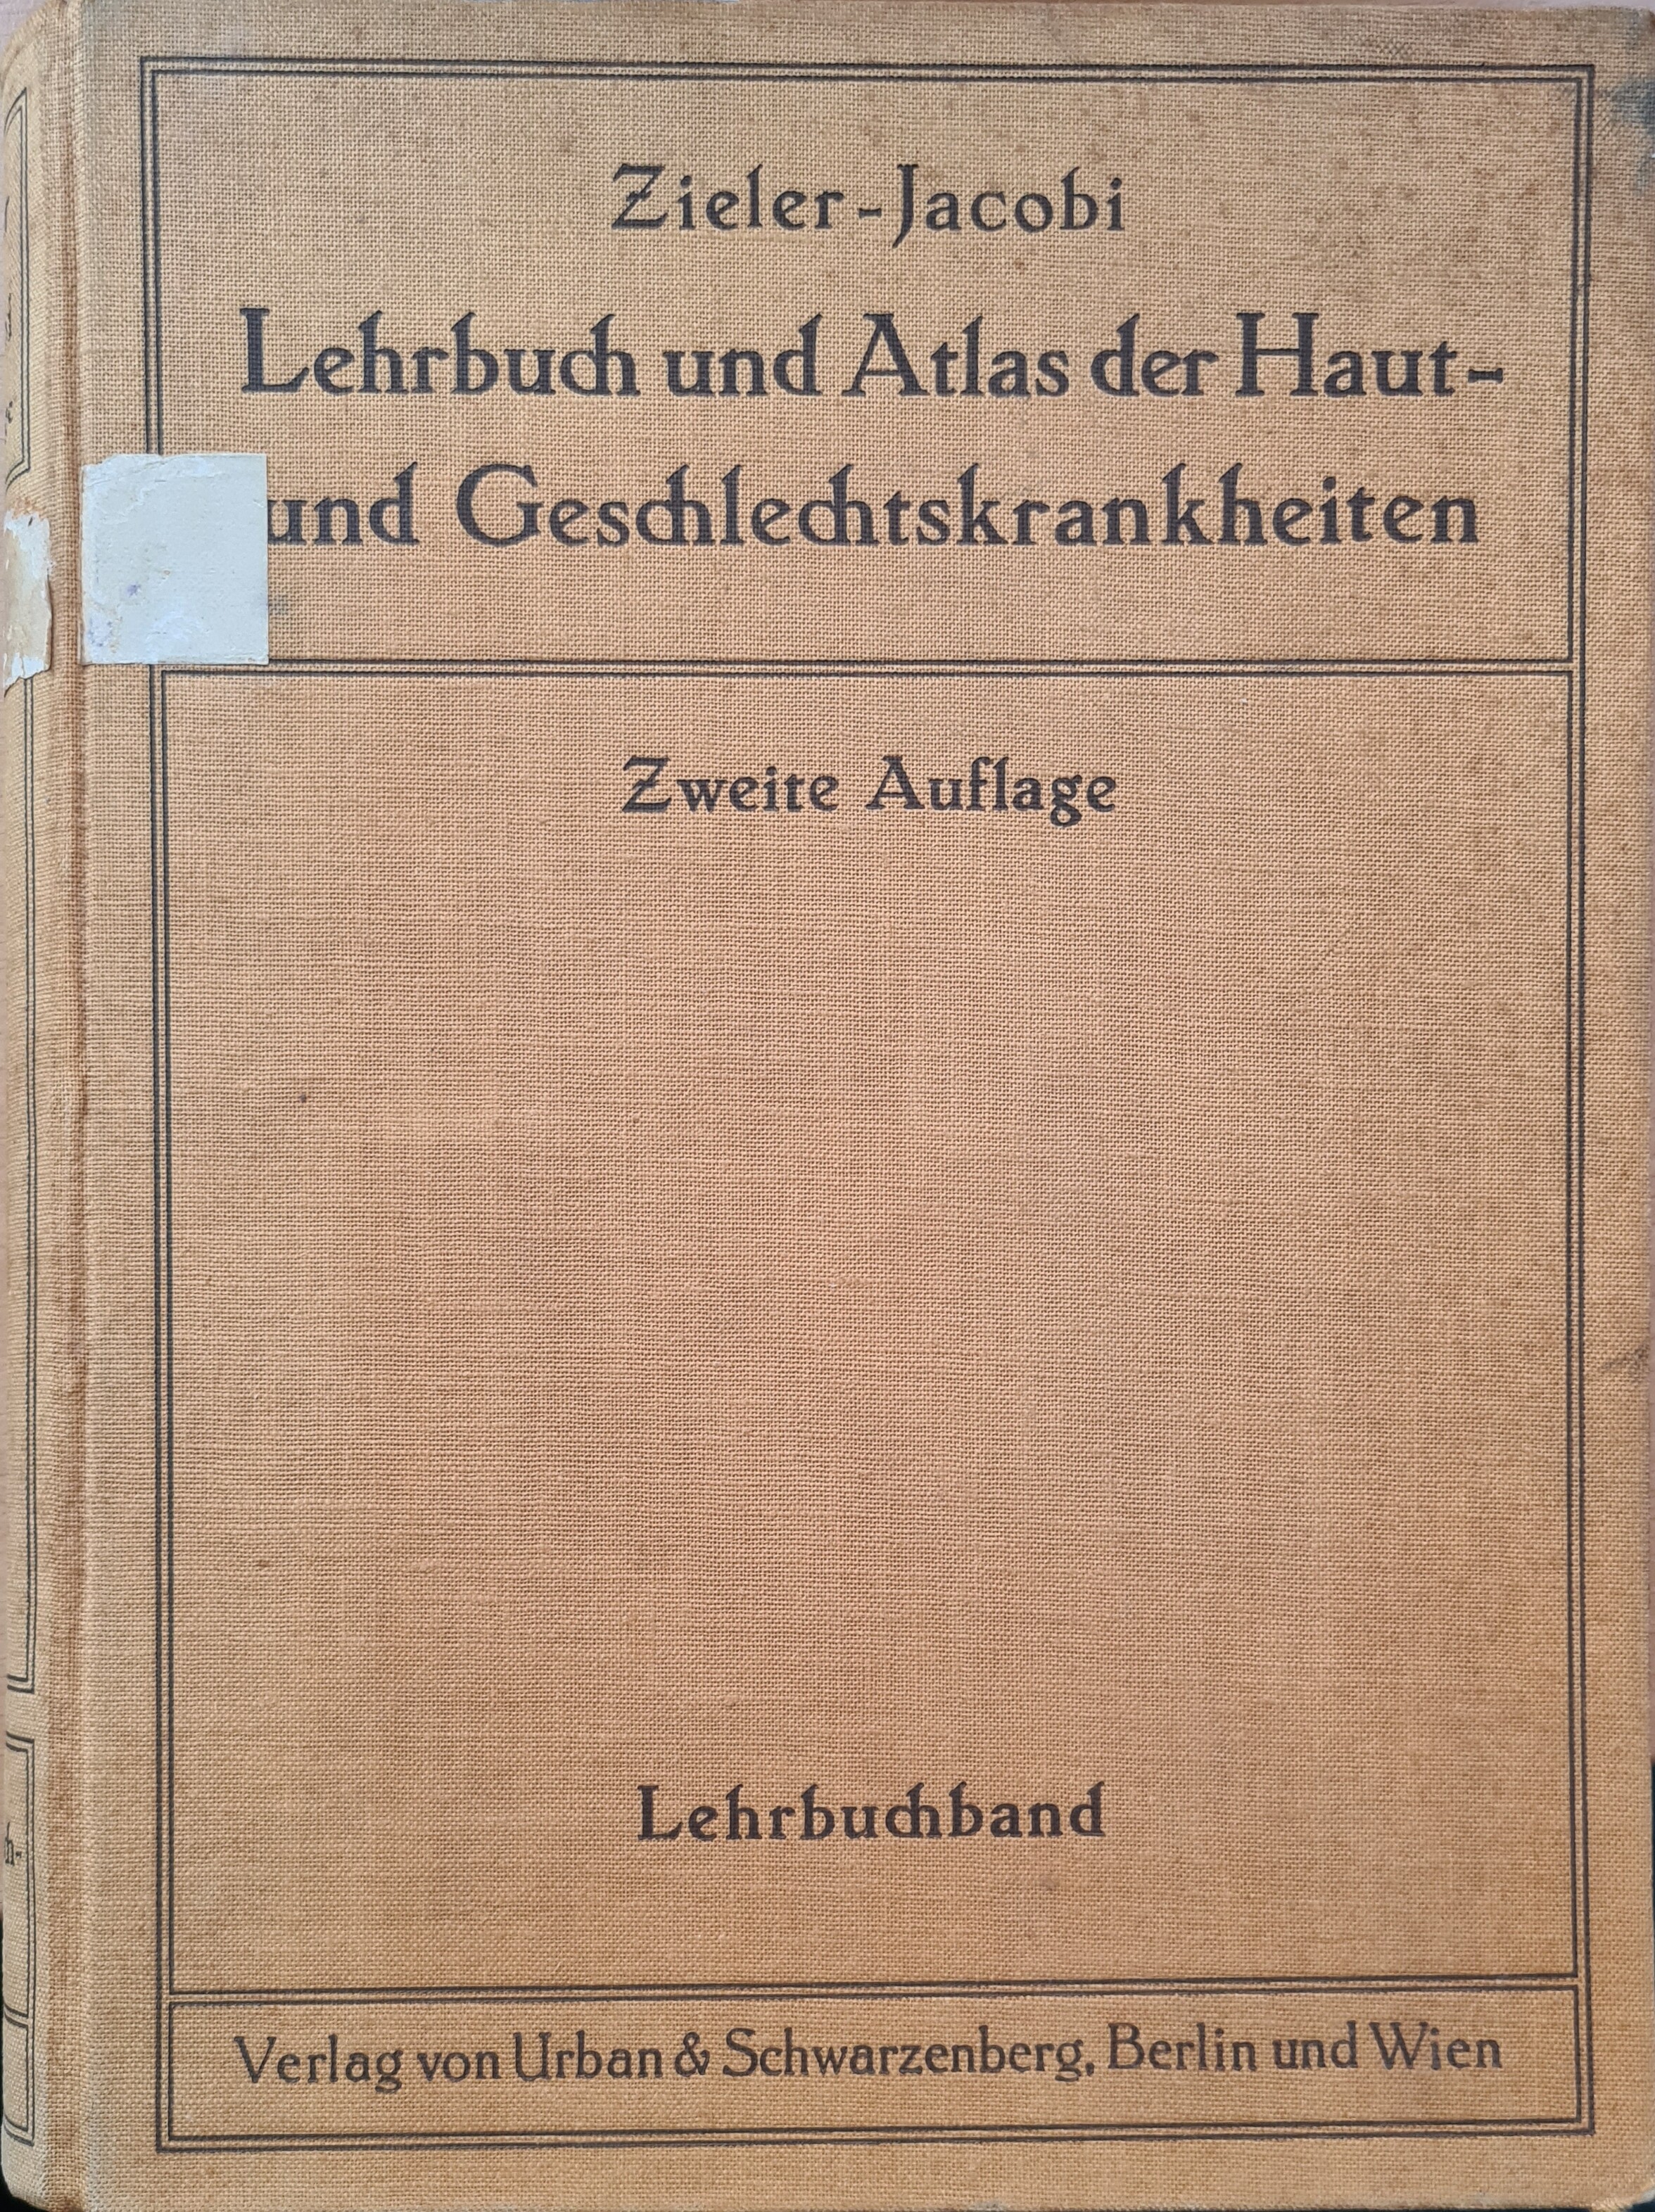 Lehrbuch und Atlas der Haut- und Geschlechtskrankheiten (Krankenhausmuseum Bielefeld e.V. CC BY-NC-SA)